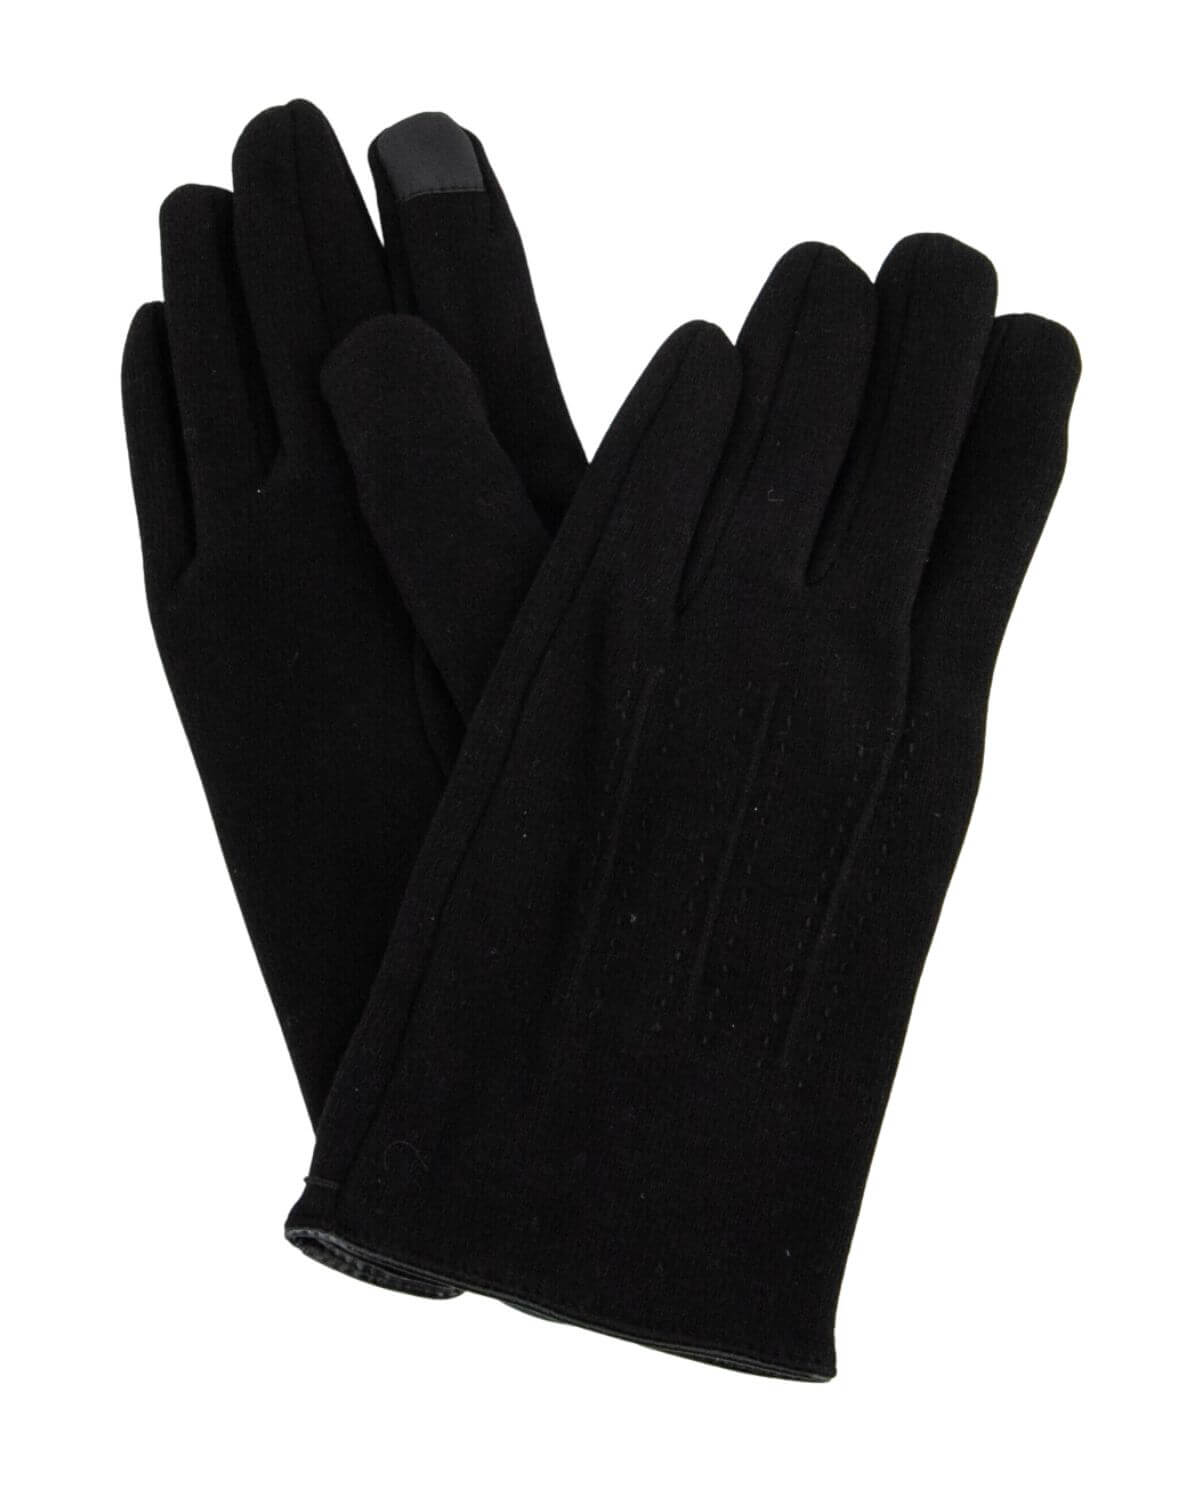 Federica gloves